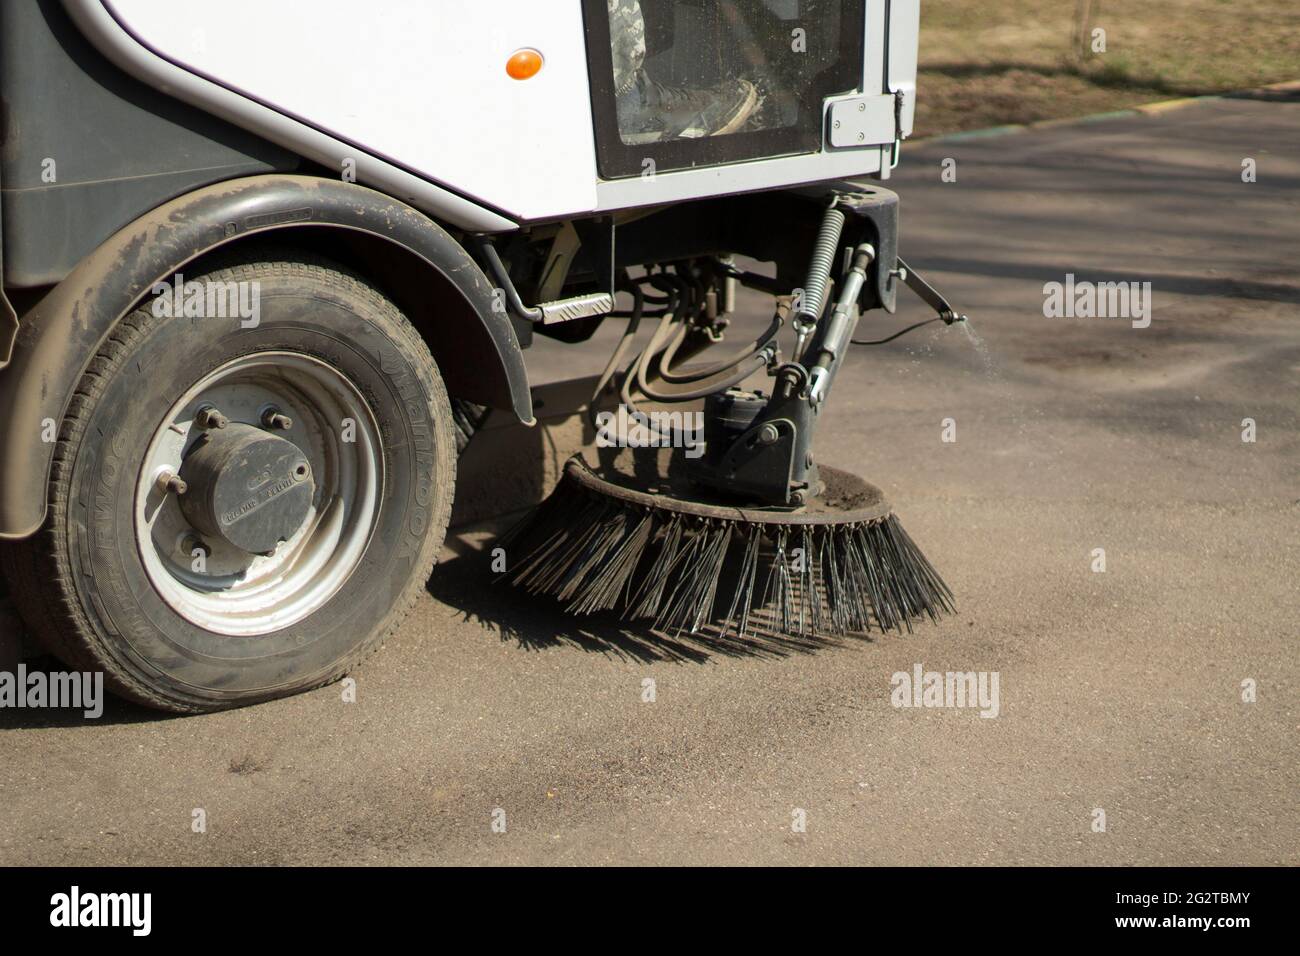 Le balai balaie l'asphalte. Nettoyage de la trajectoire avec un véhicule de  nettoyage. Nettoyer la zone de la poussière Photo Stock - Alamy